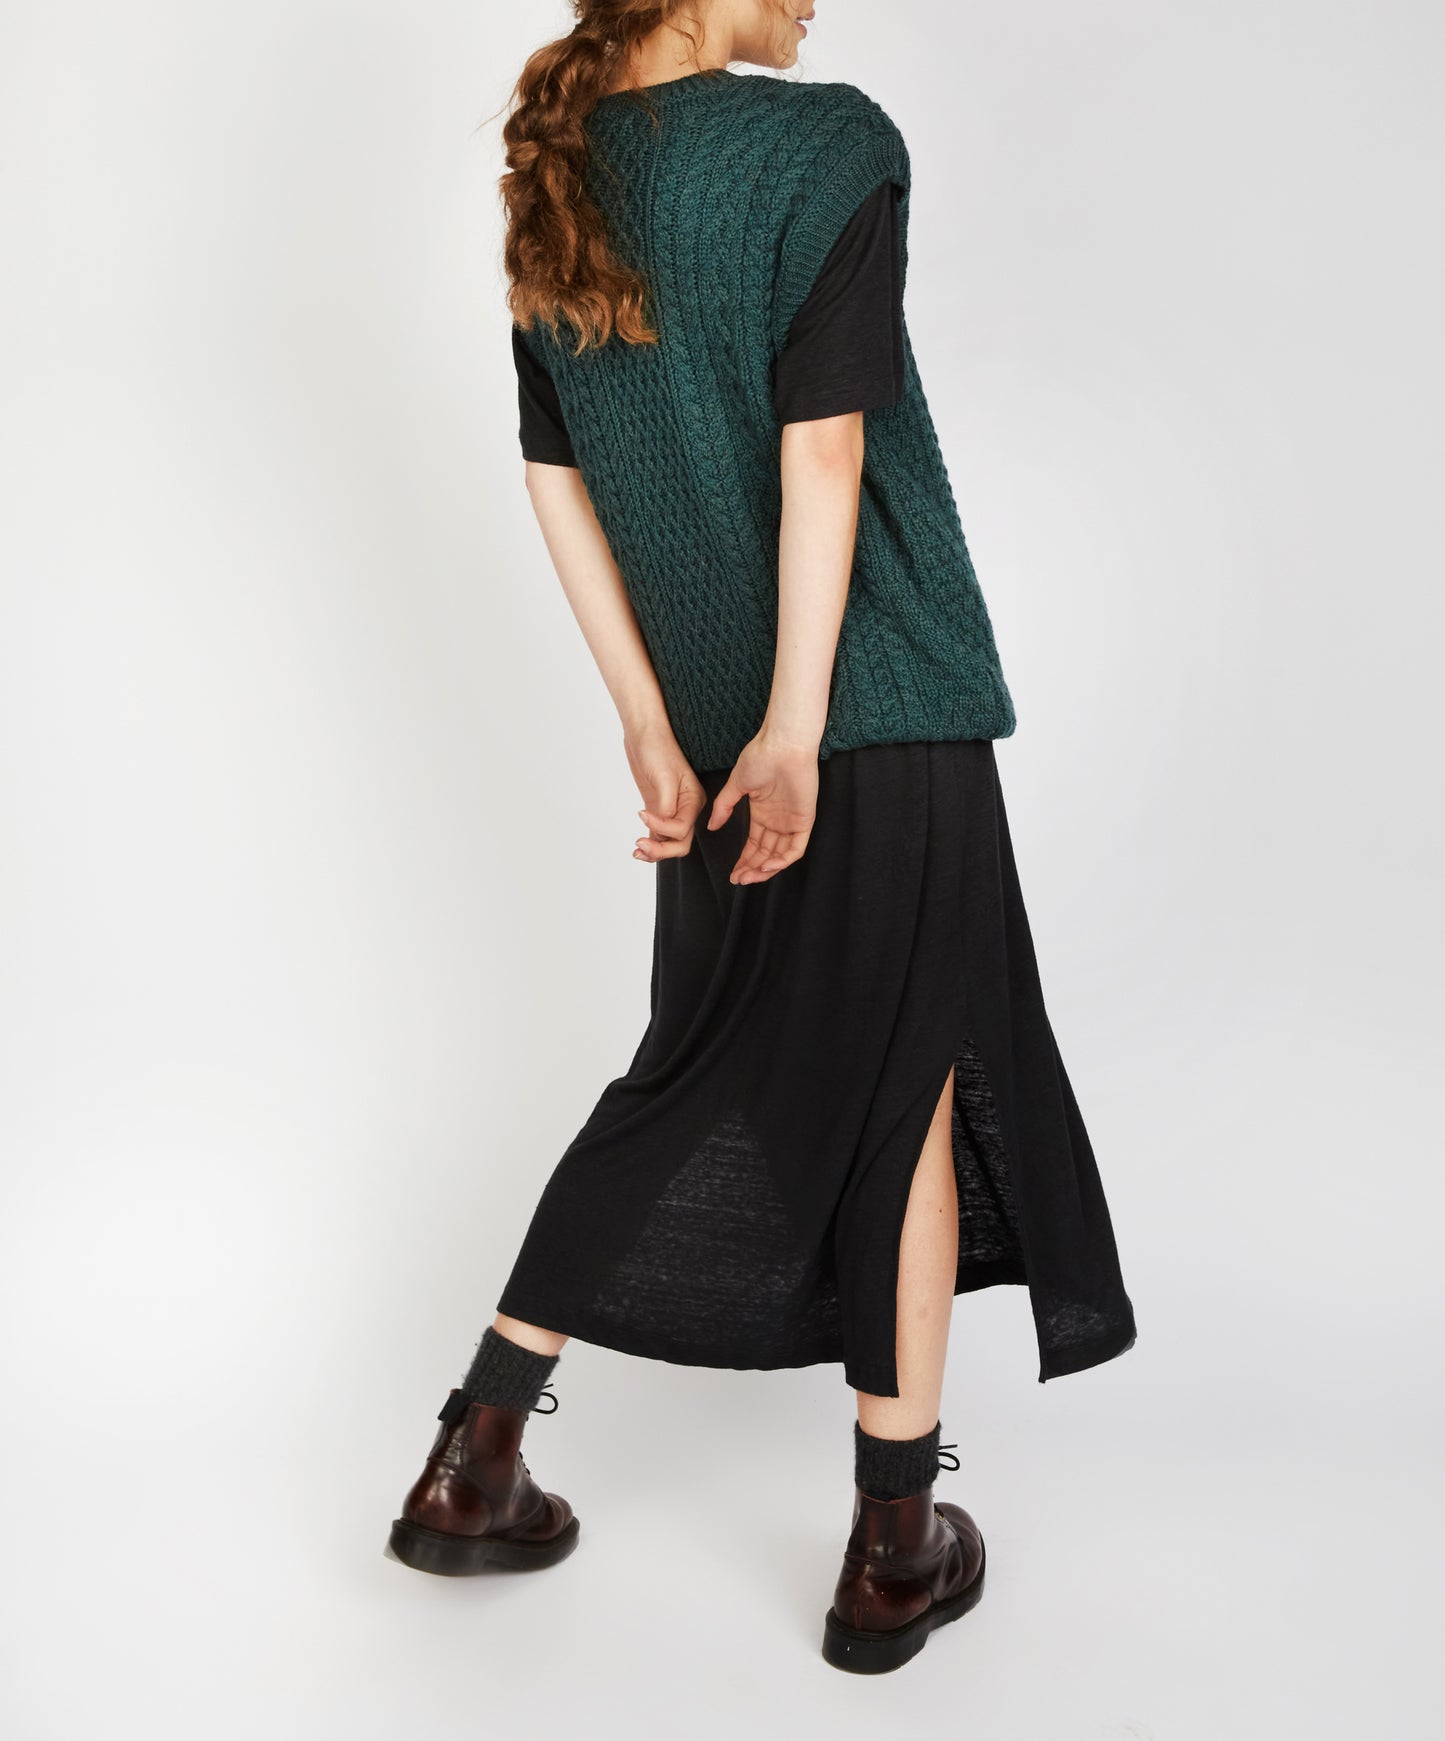 IrelandsEye Knitwear Womens Birch Aran V-Neck Vest in Evergreen